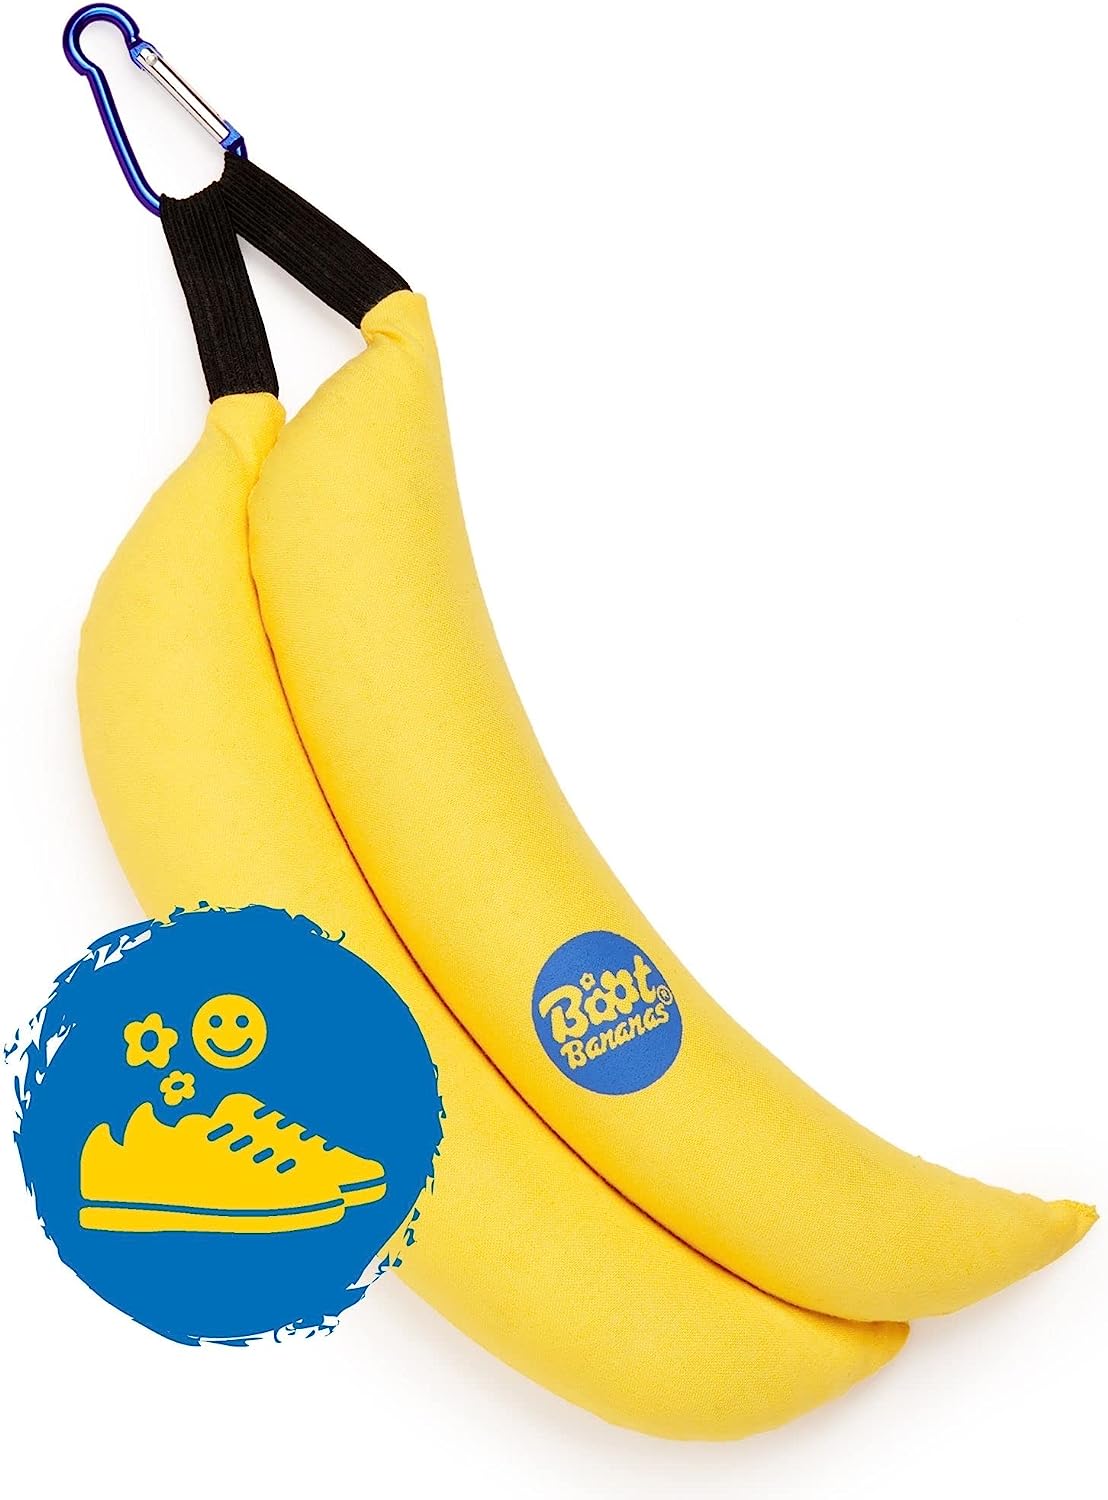 Boot Bananas Original Shoe Deodorizer | Long-Lasting, [...]